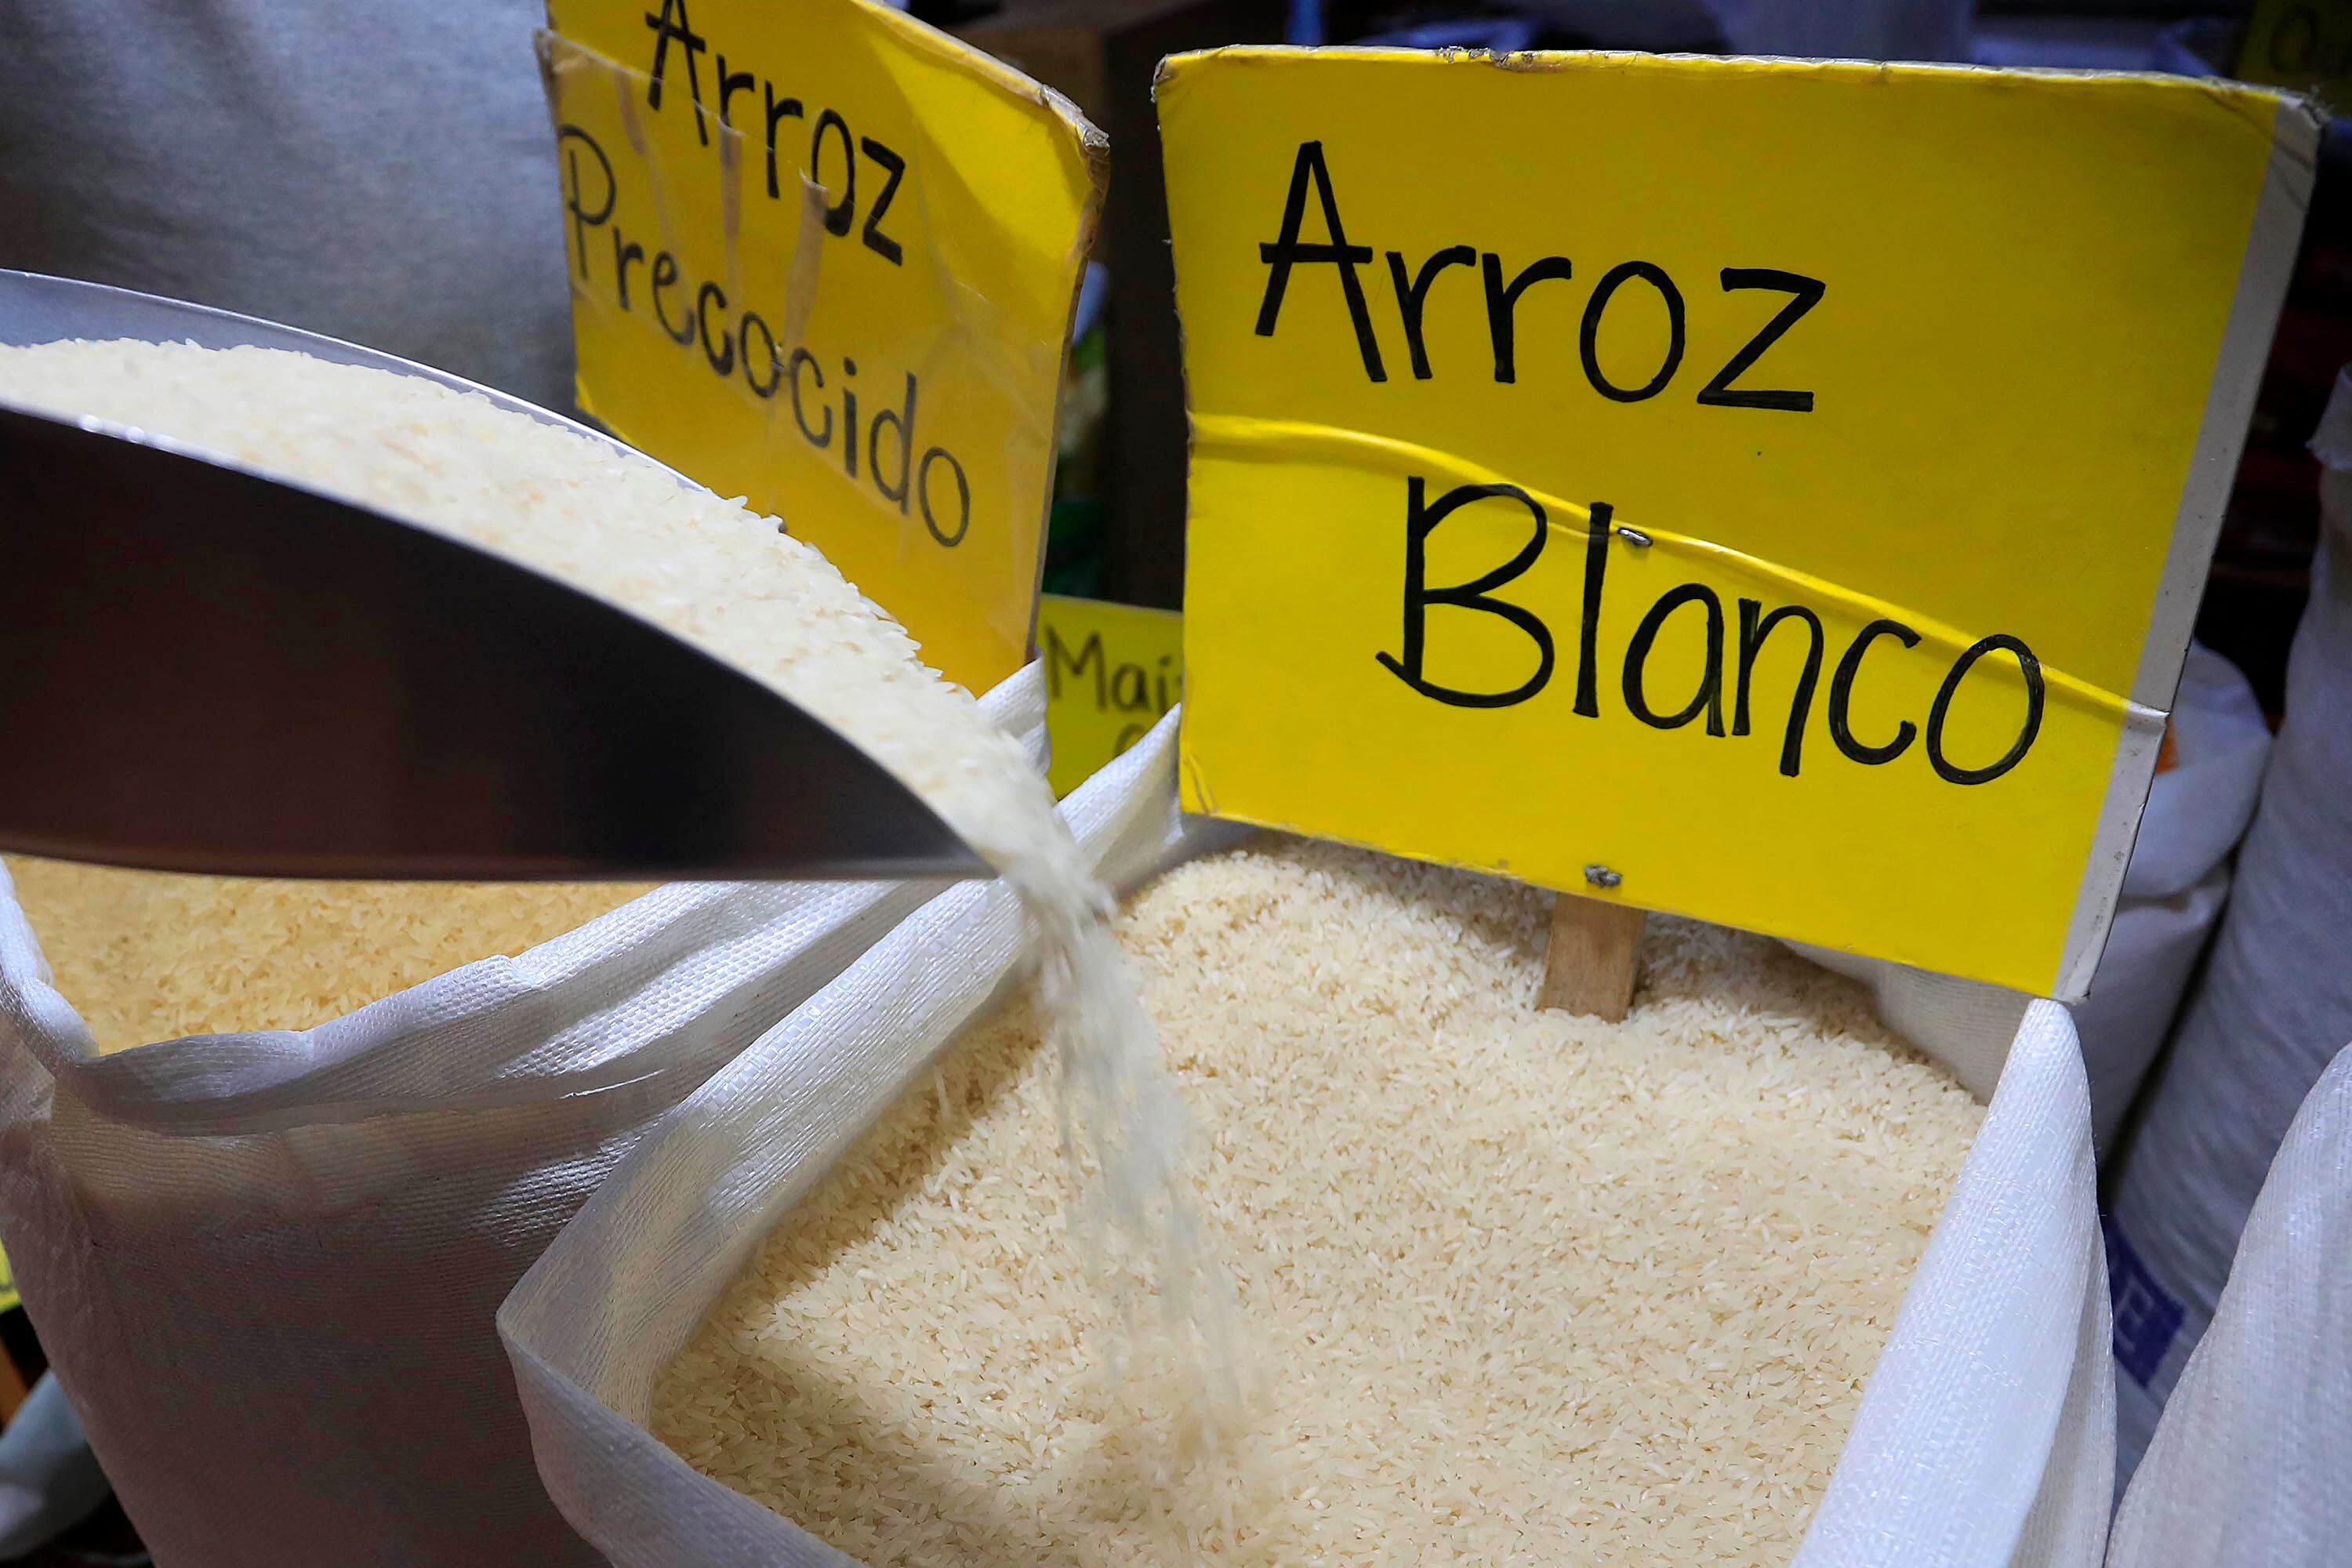 Costa Rica consume unas 34.000 toneladas de arroz en granza mensuales, alrededor de 410.000 toneladas anuales, según estimaciones de Conarroz.